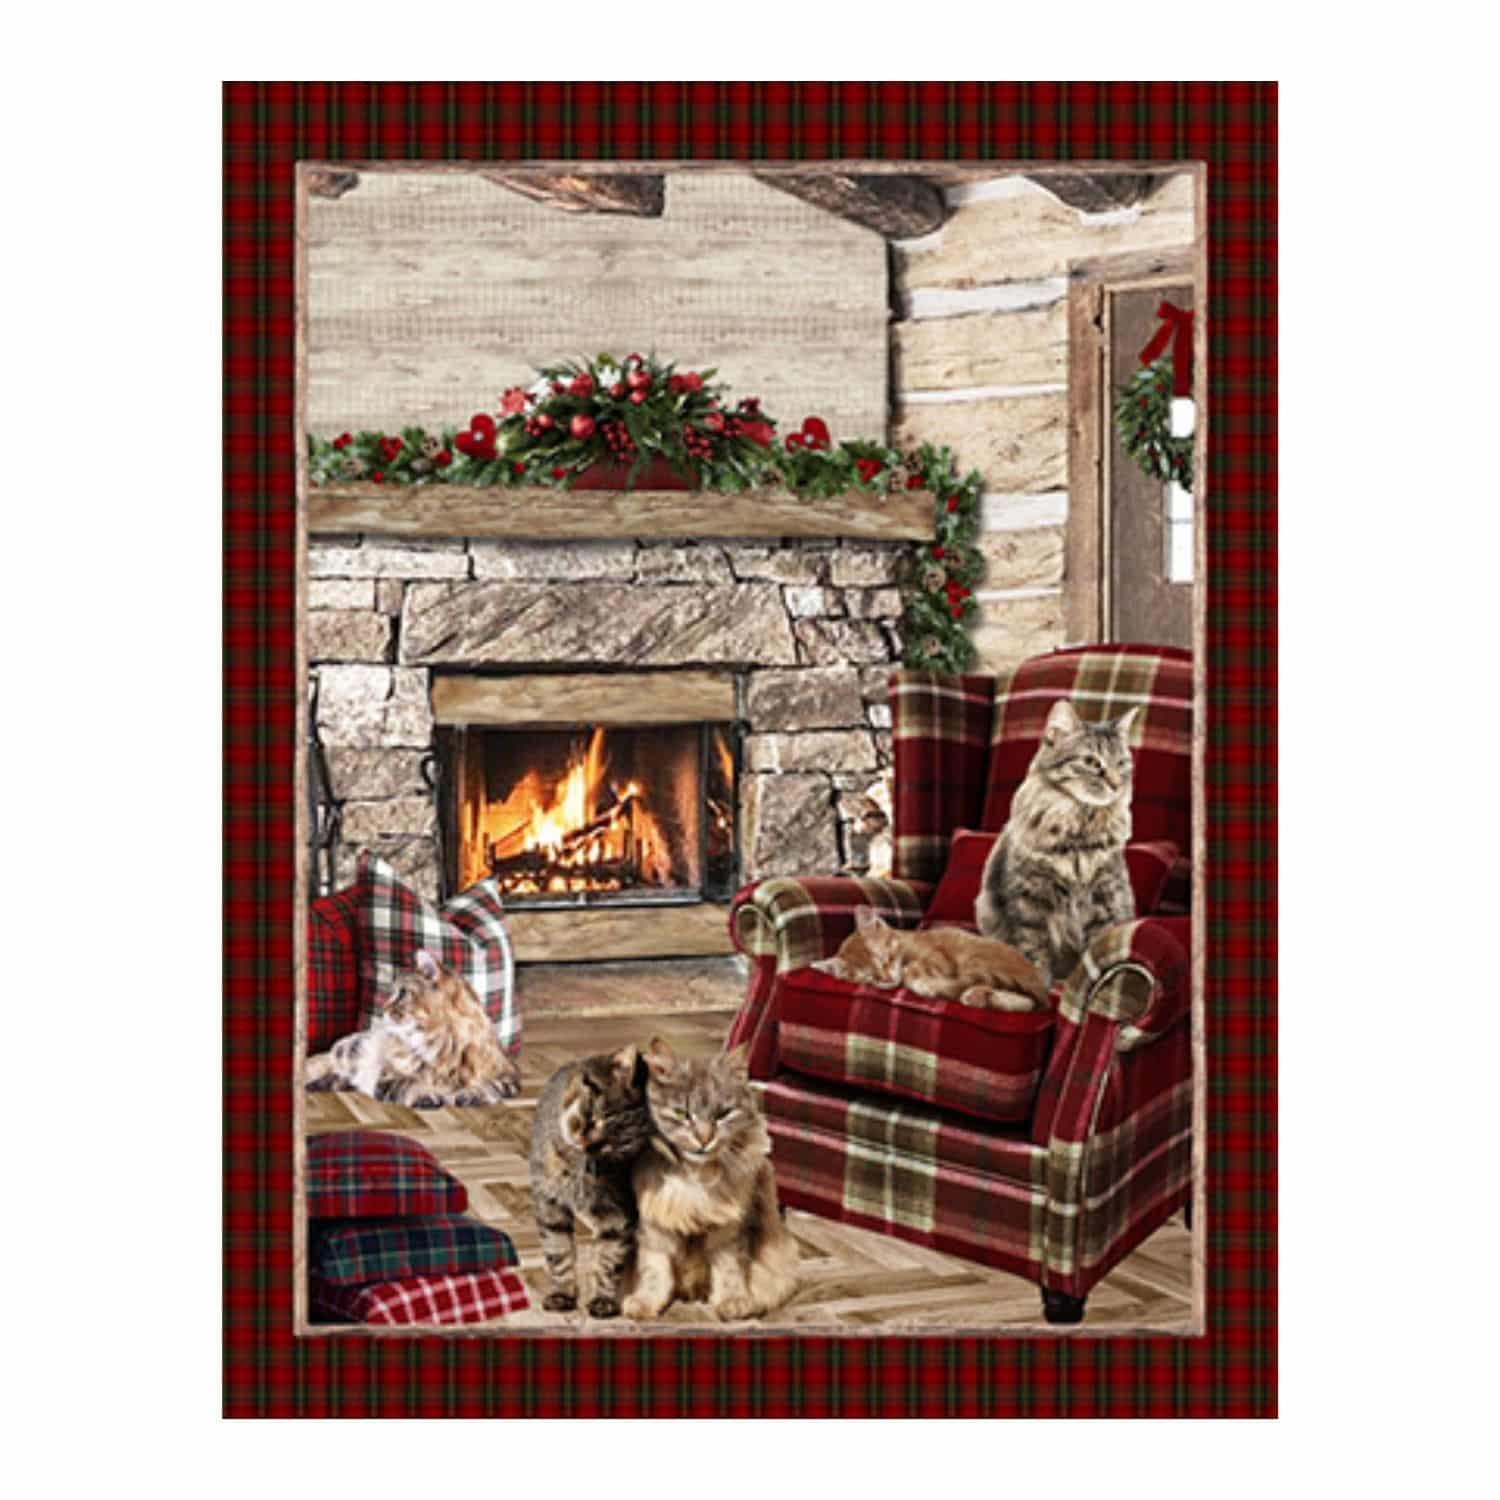 gatti-pigri-scozzese-camino-fuoco-calda-plaid-coperta-sherpa-stampa-digitale-stampato-130x160-invernale-dettaglio